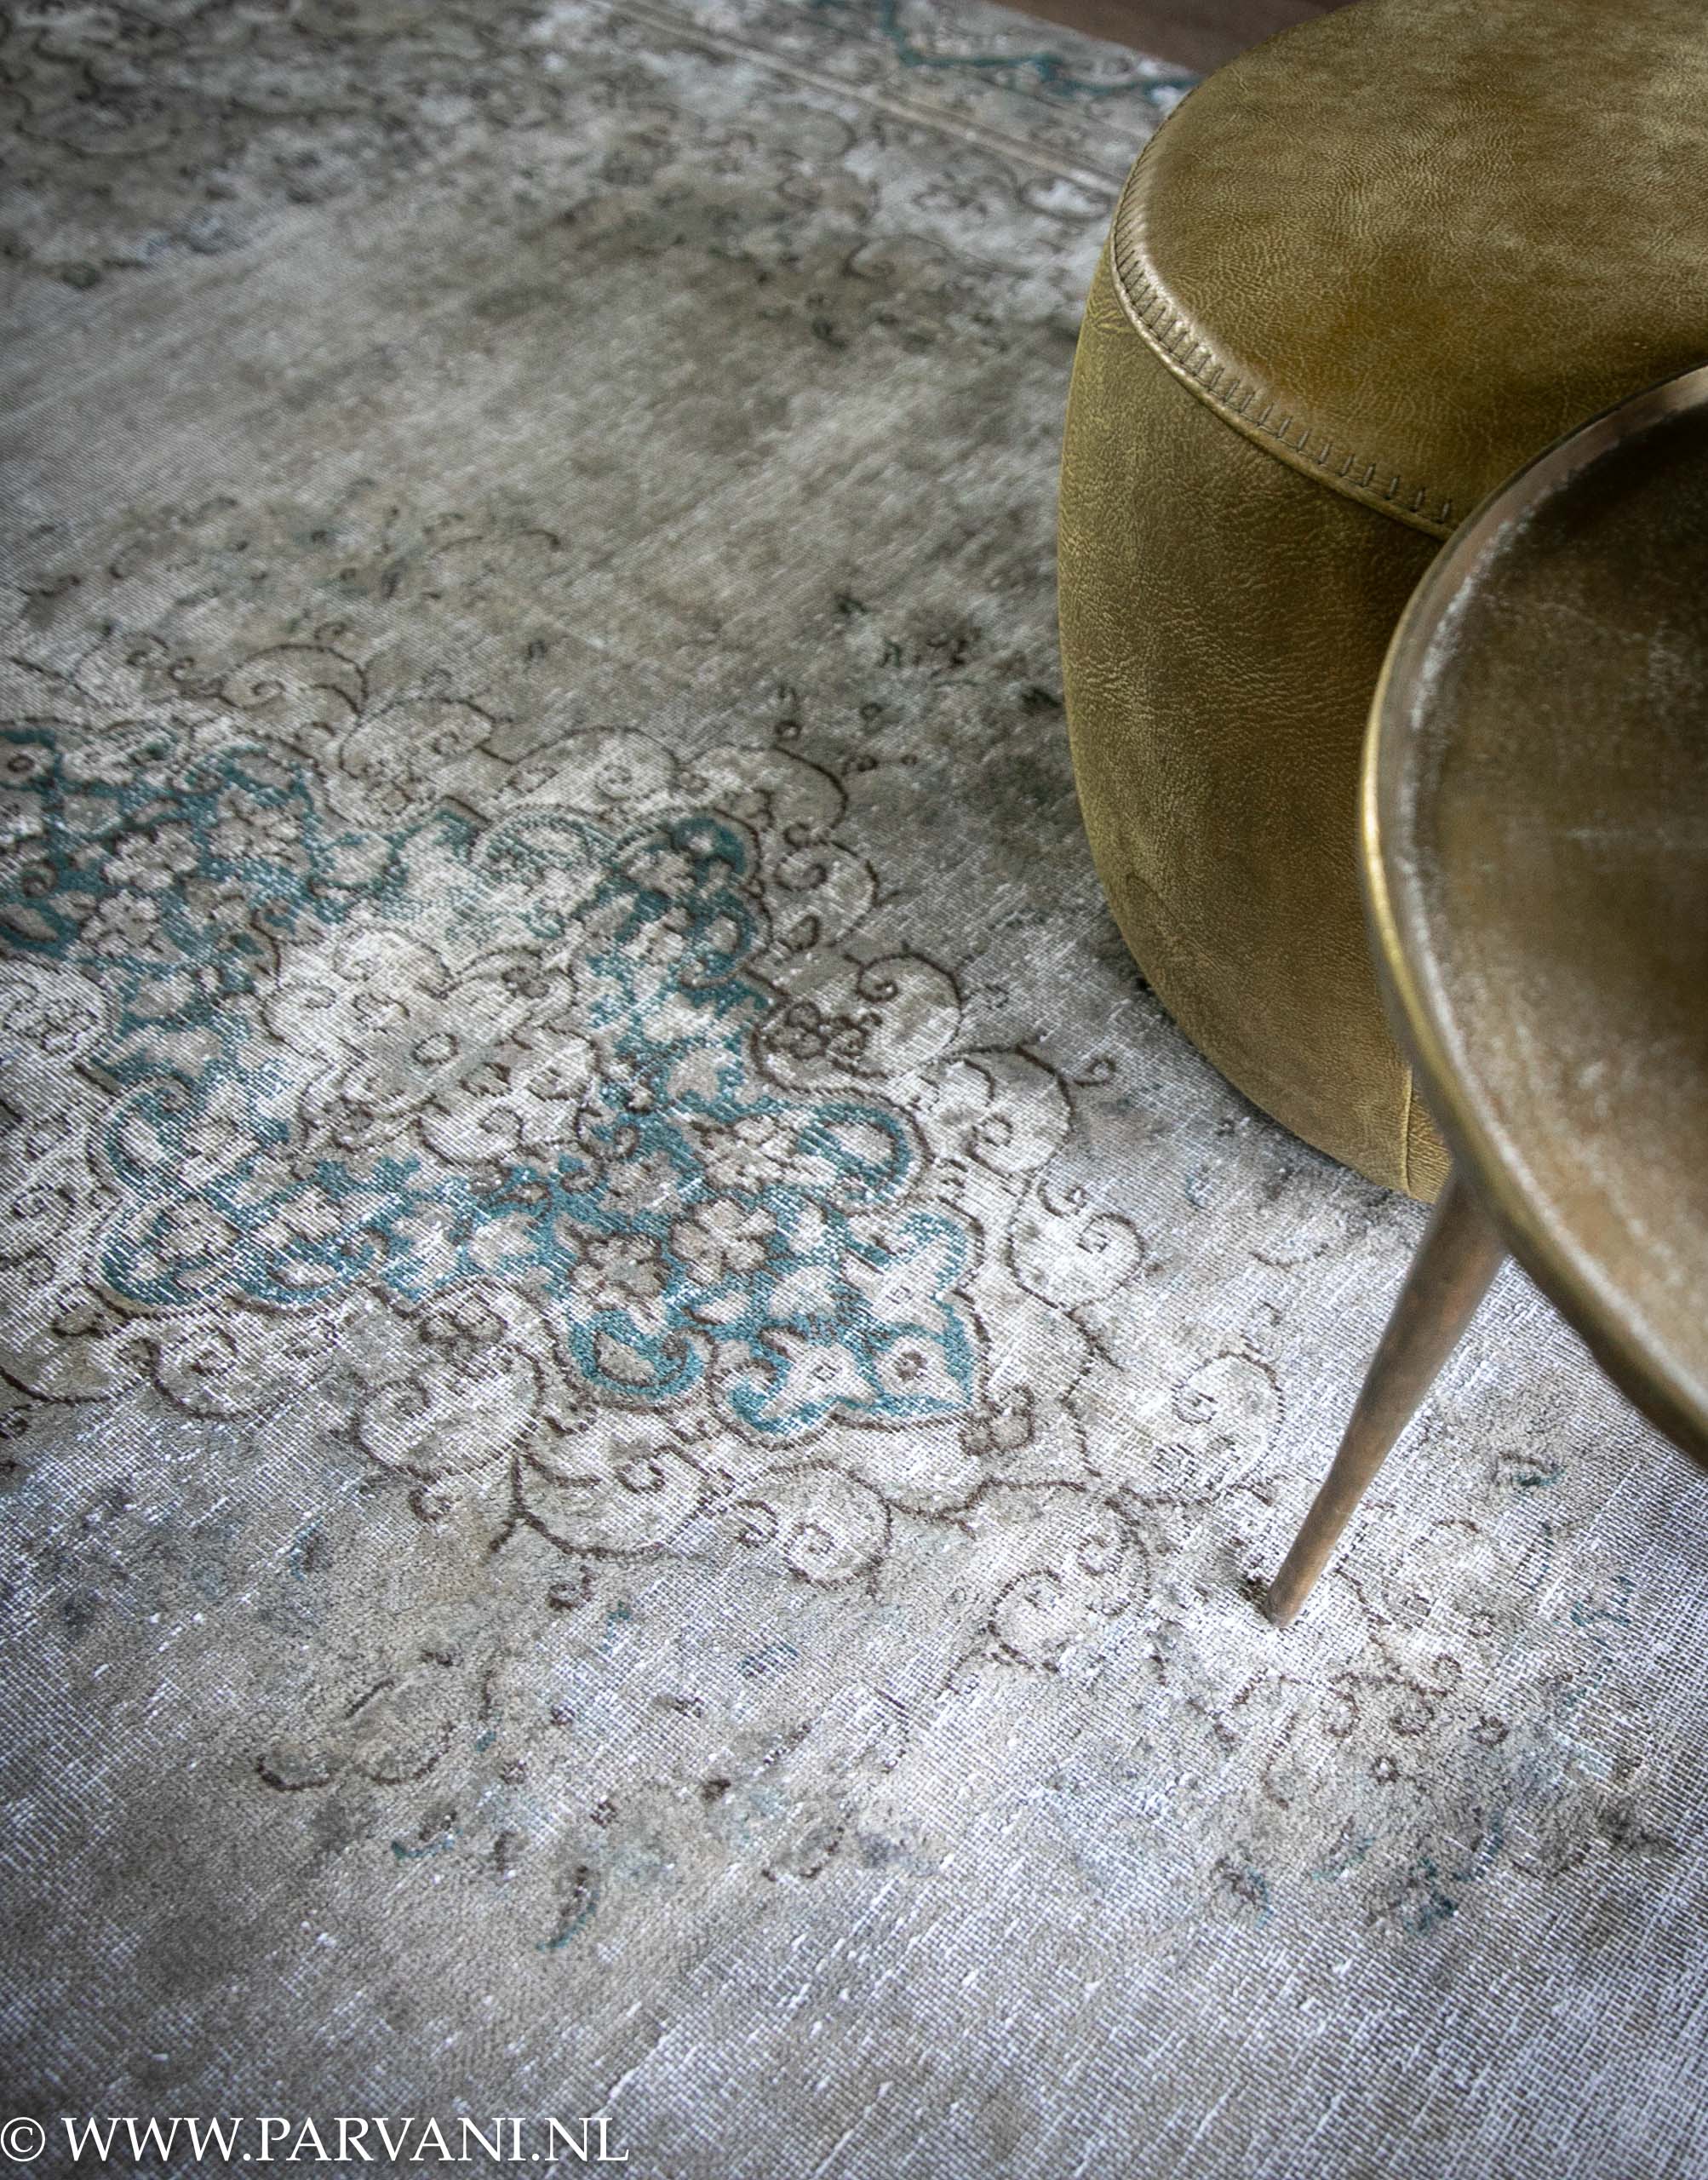 Civic atomair uitdrukken Vintage tapijt uit Iran grijs groen blauwe kleur met patroon in petrol  detail | Parvani